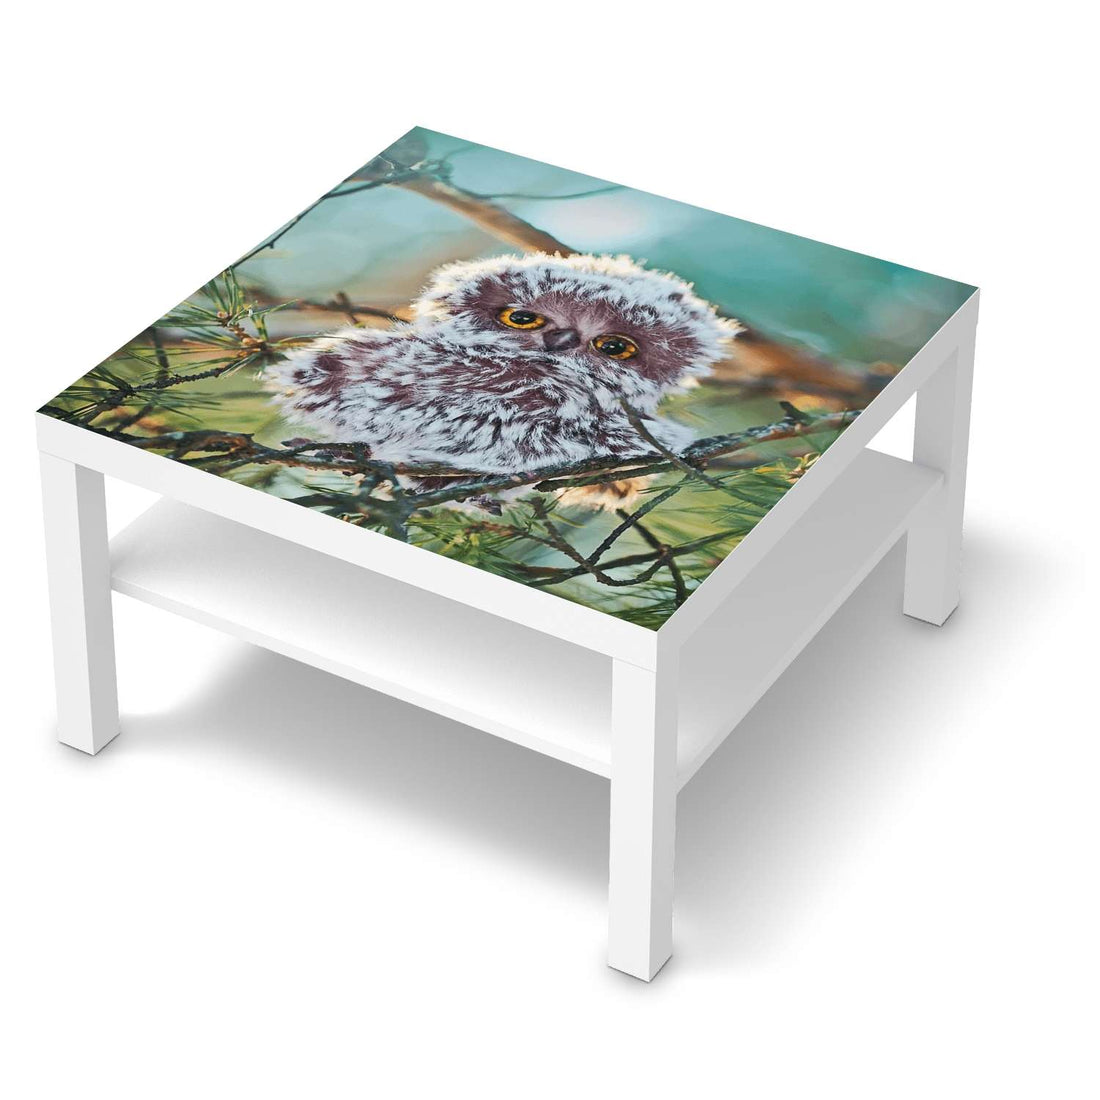 Selbstklebende Folie Wuschel - IKEA Lack Tisch 78x78 cm - weiss